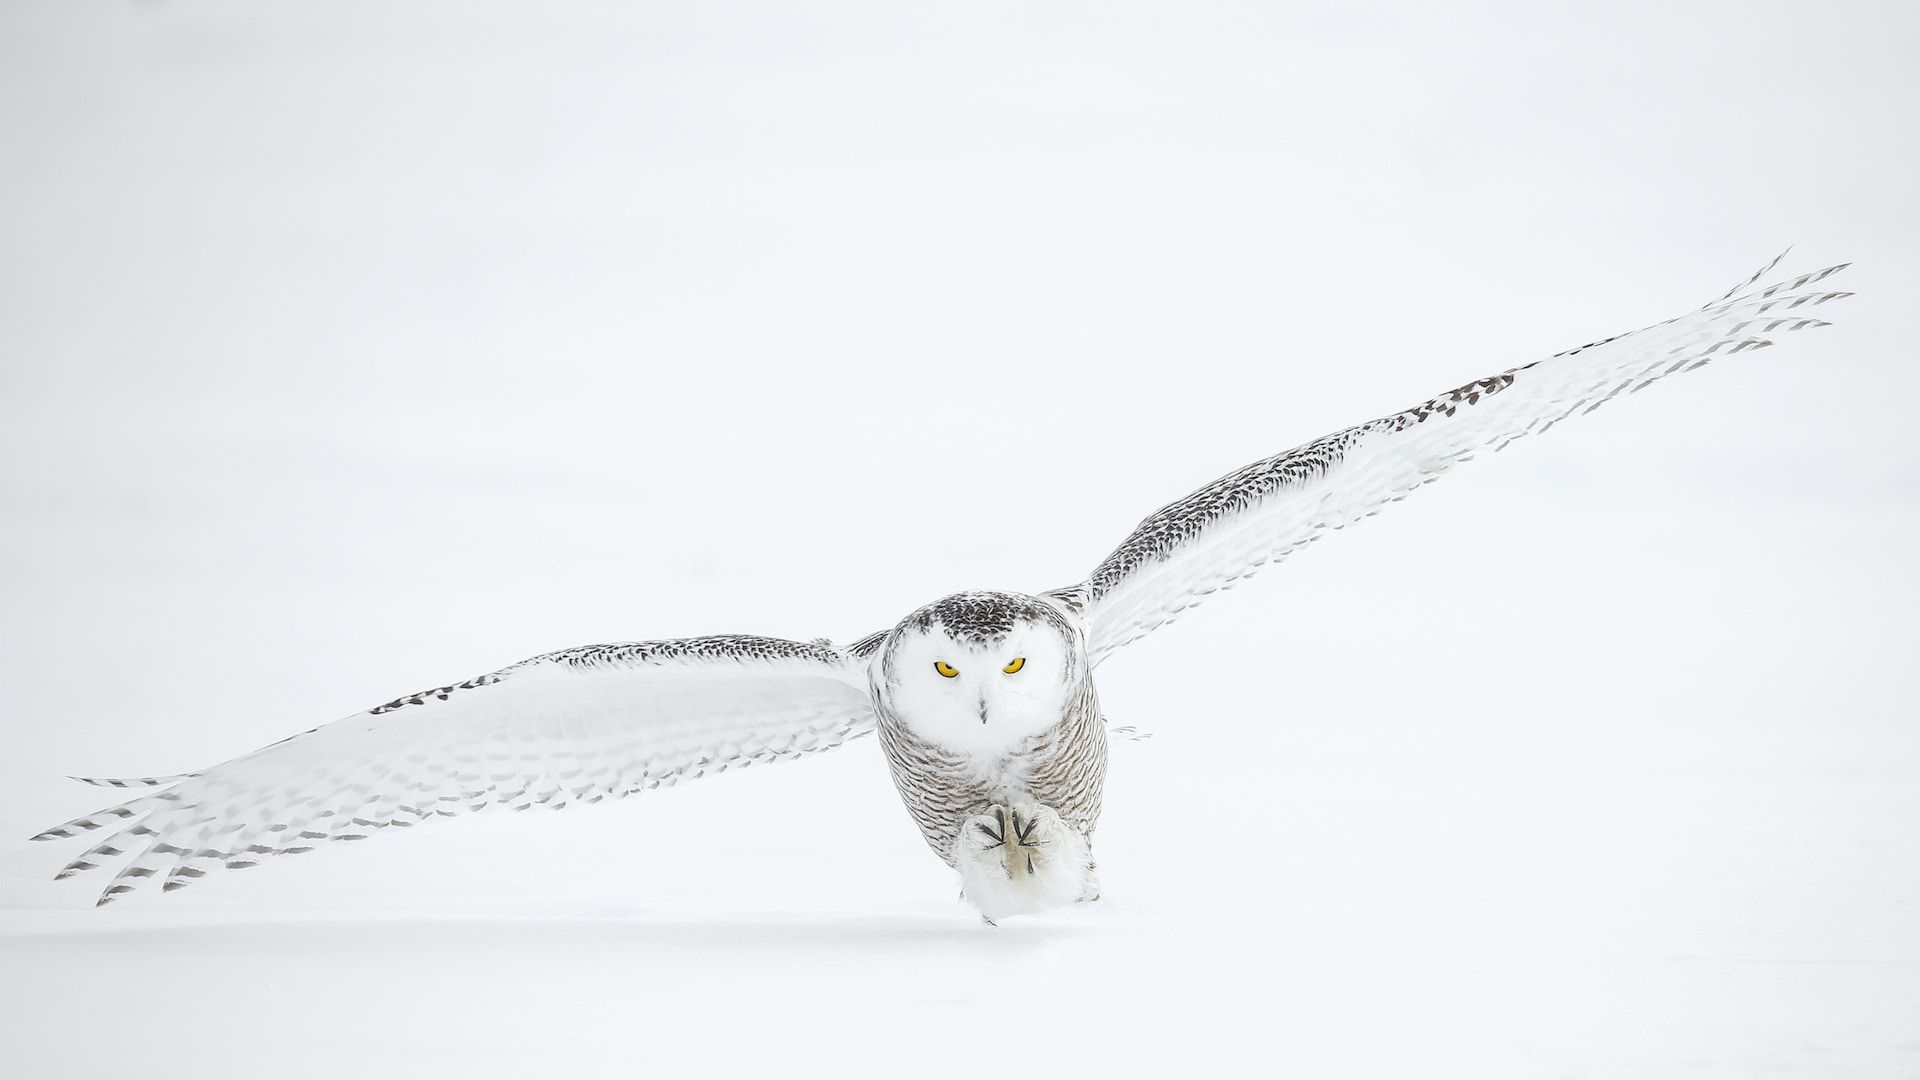 Chouette en plein vol sur un terrain enneigé avec ses deux yeux perçants - Photo de Todd Steitle sur https://unsplash.com/fr/photos/ExnAdmi-Asc